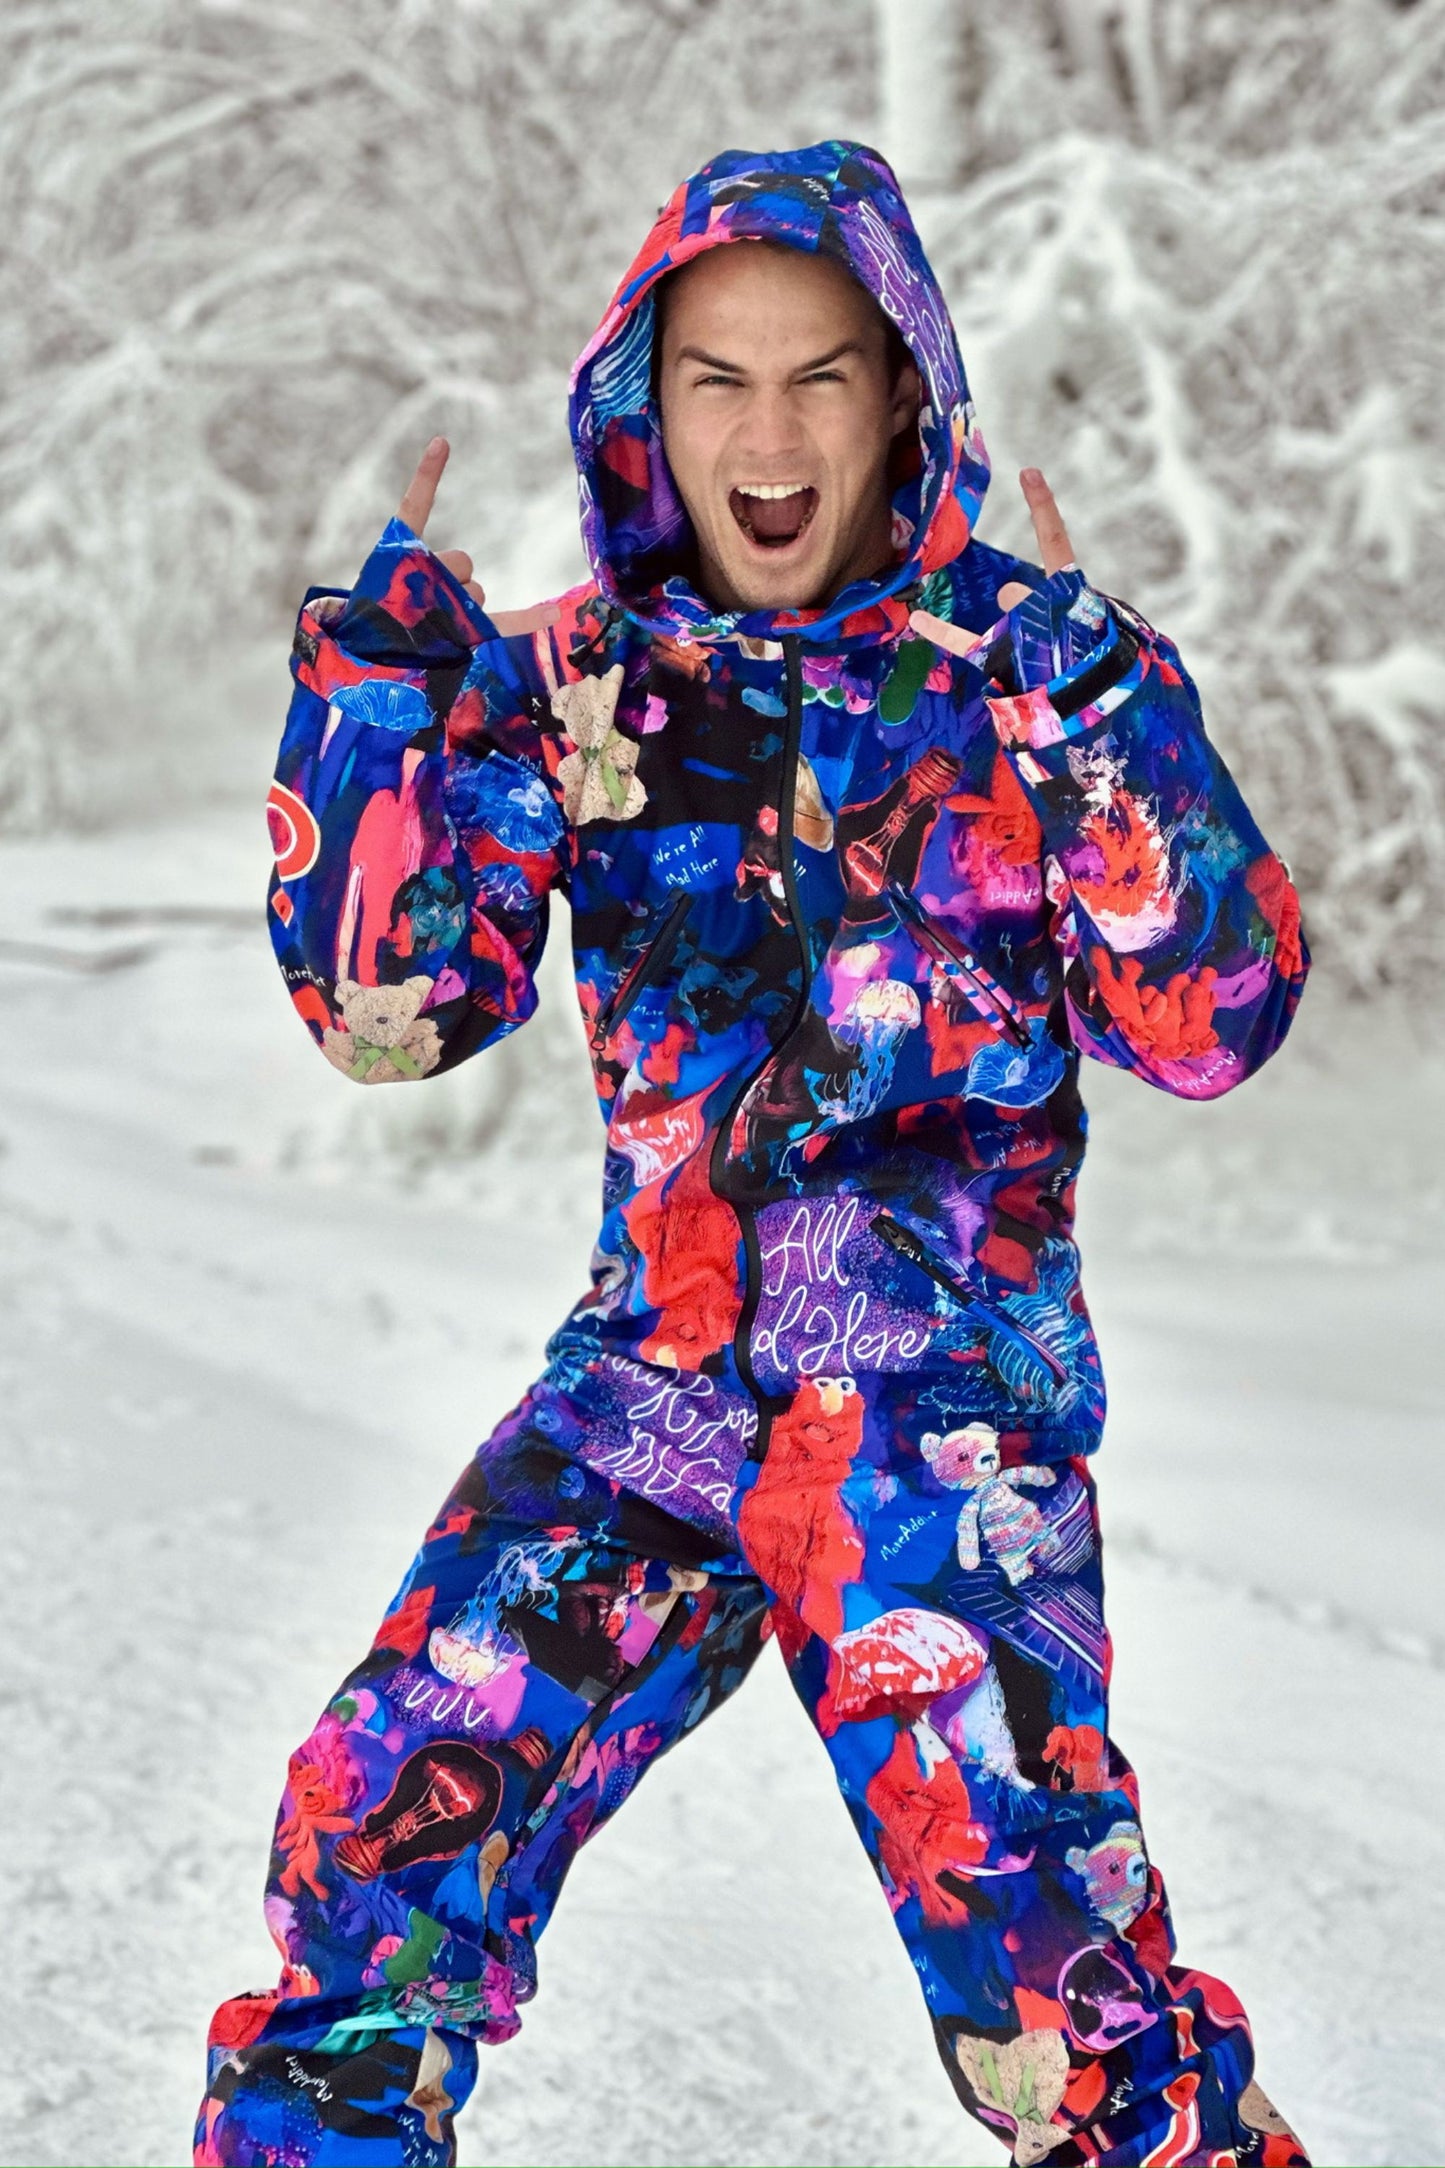 Vīriešu ziemas slēpošanas/snovborda kombinezons ar krāsainu violetu apdruku